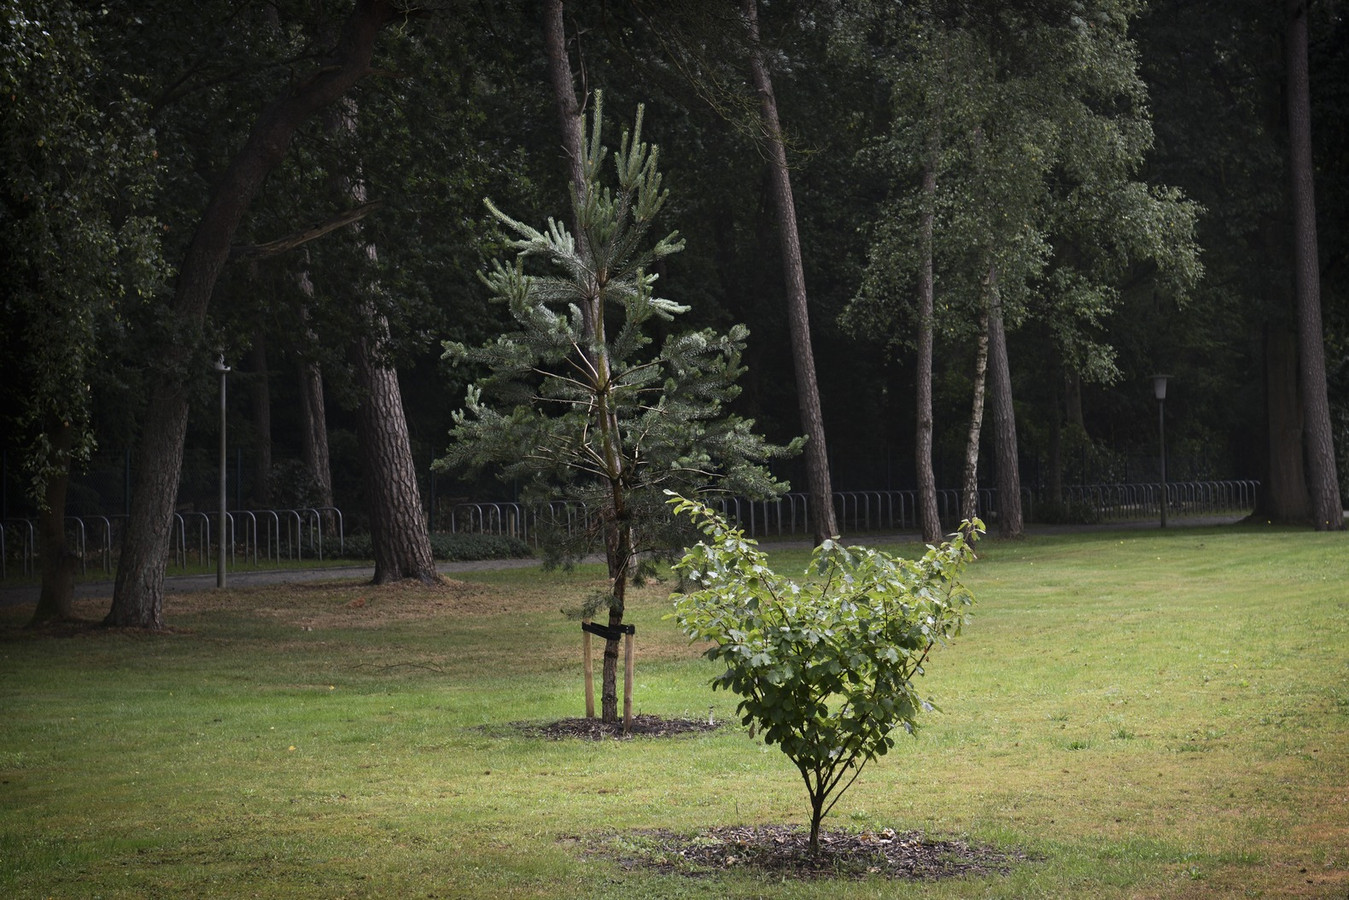 de eerste Verminderen zelfmoord Op deze plekken krijgt het verdriet een plaats | Foto | AD.nl